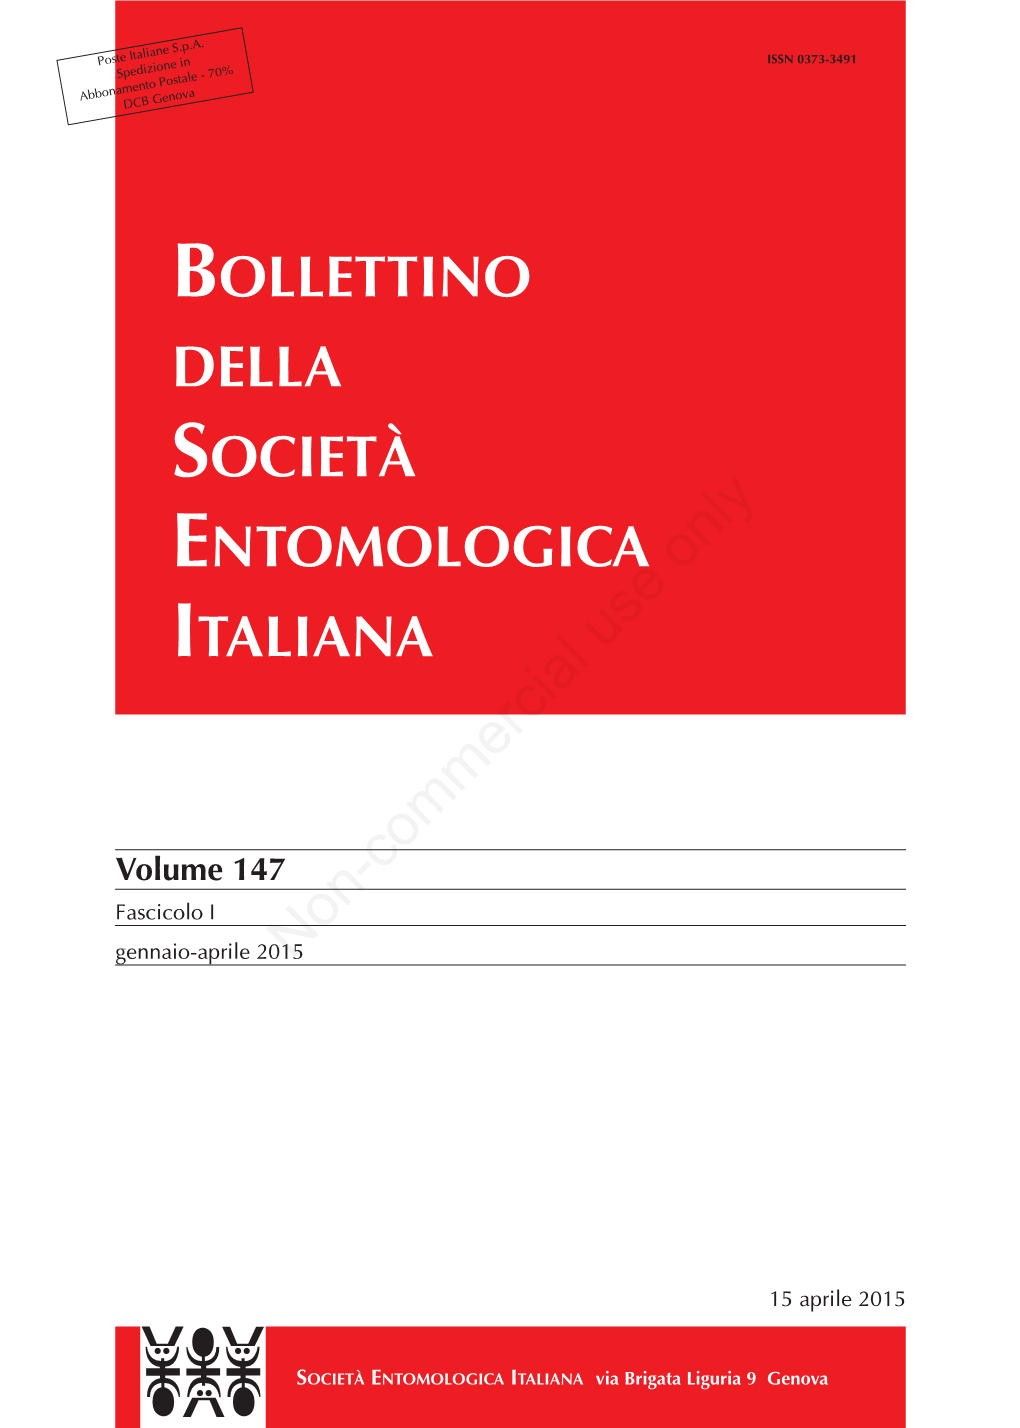 BOLLETTINO DELLA SOCIETÀ ENTOMOLOGICA ITALIANA Non-Commercial Use Only